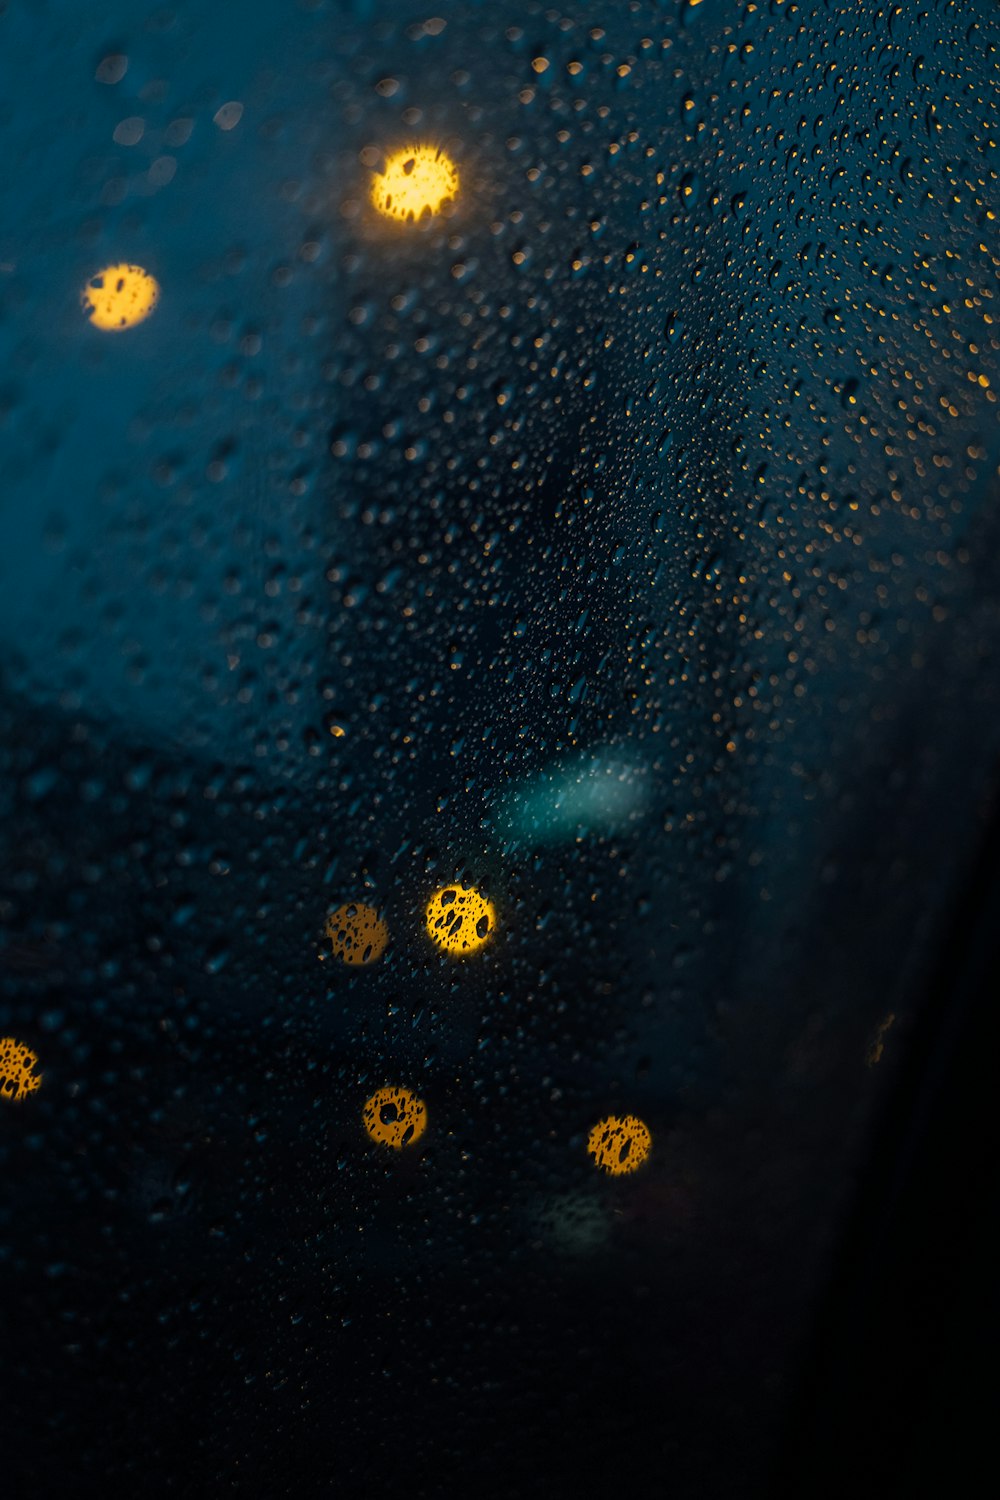 노란 불빛이 있는 창문에 빗방울이 떨어진다